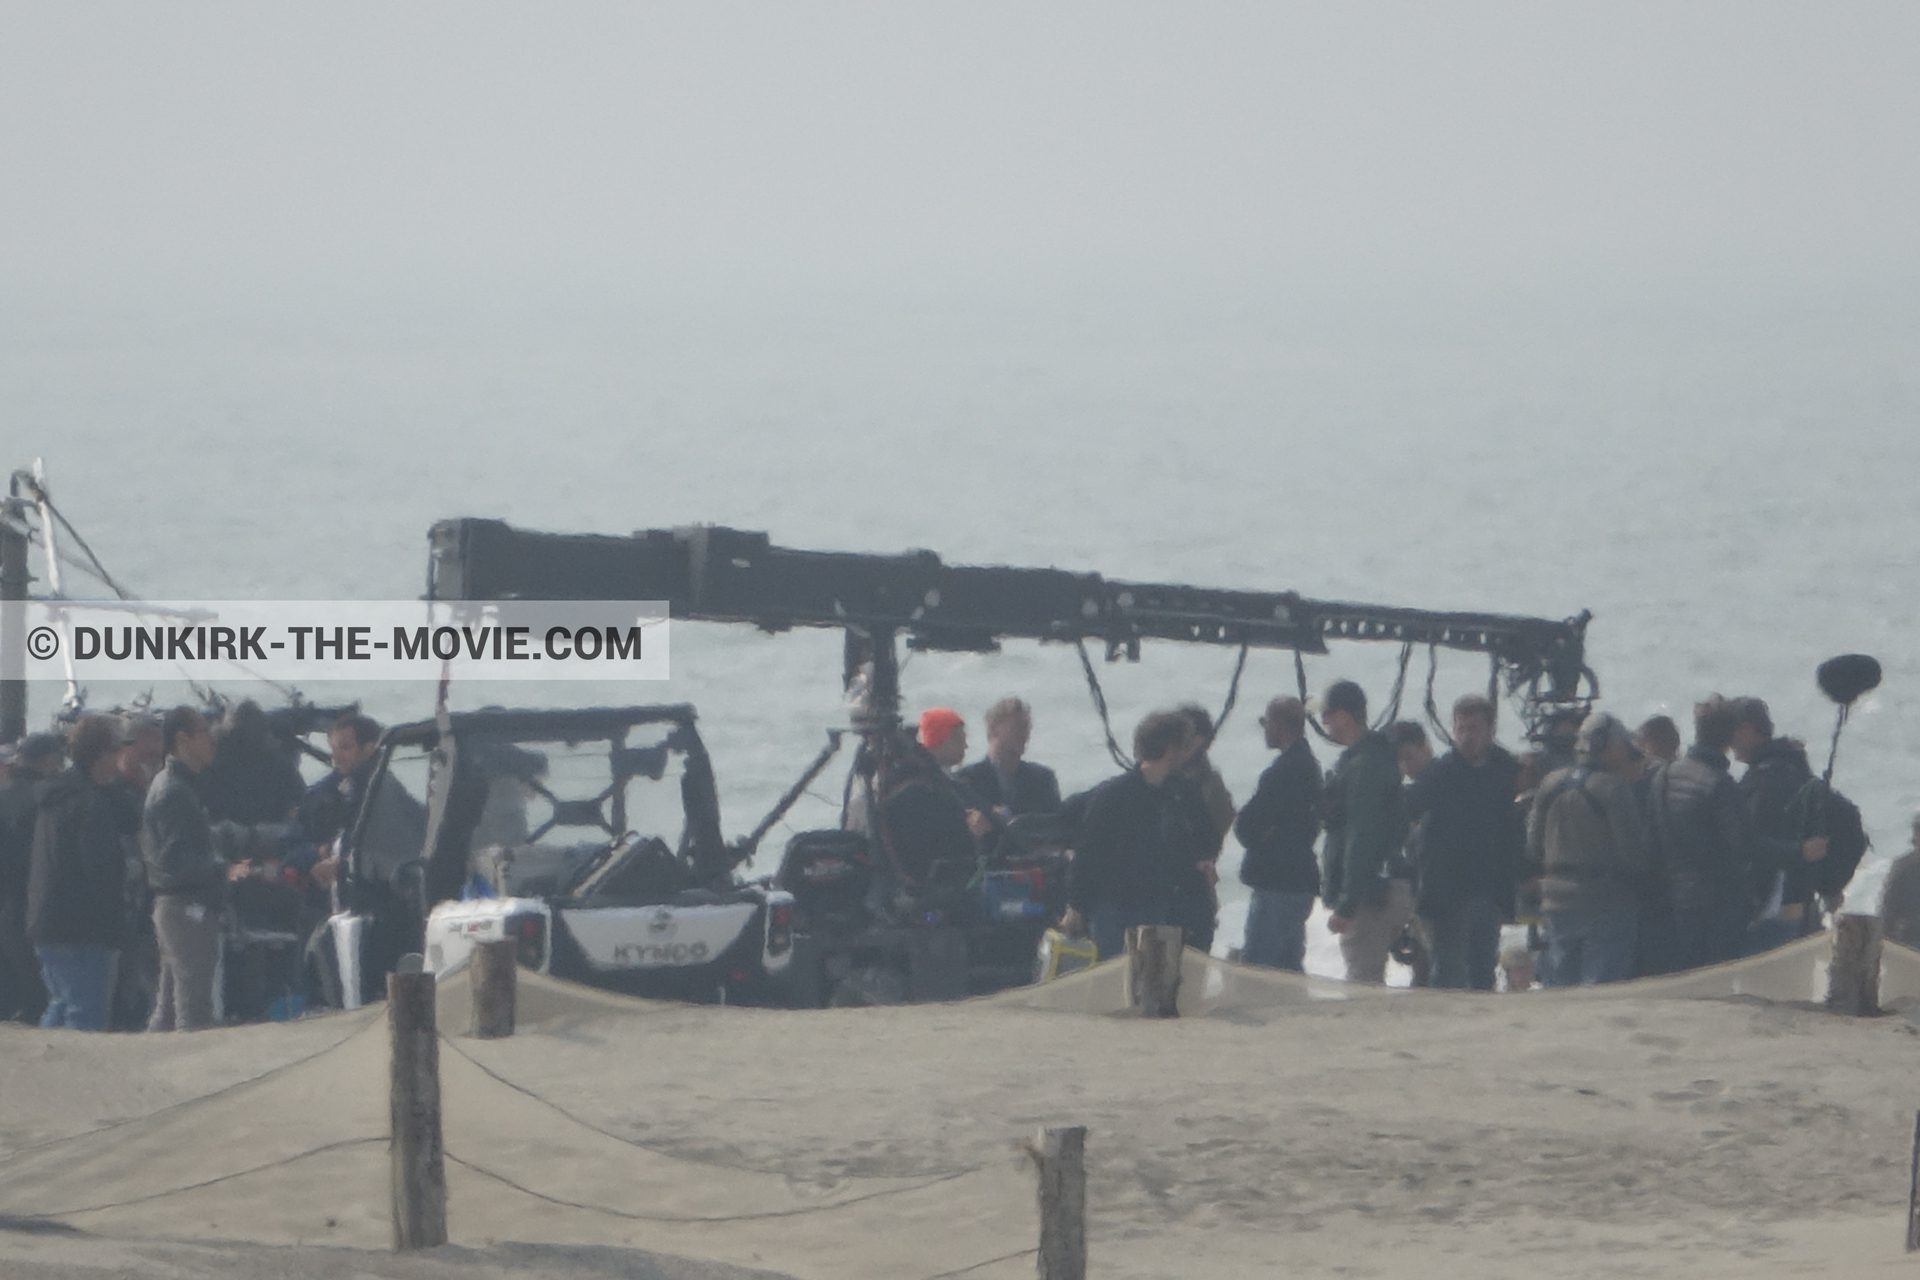 Fotos con playa, equipo técnica,  durante el rodaje de la película Dunkerque de Nolan